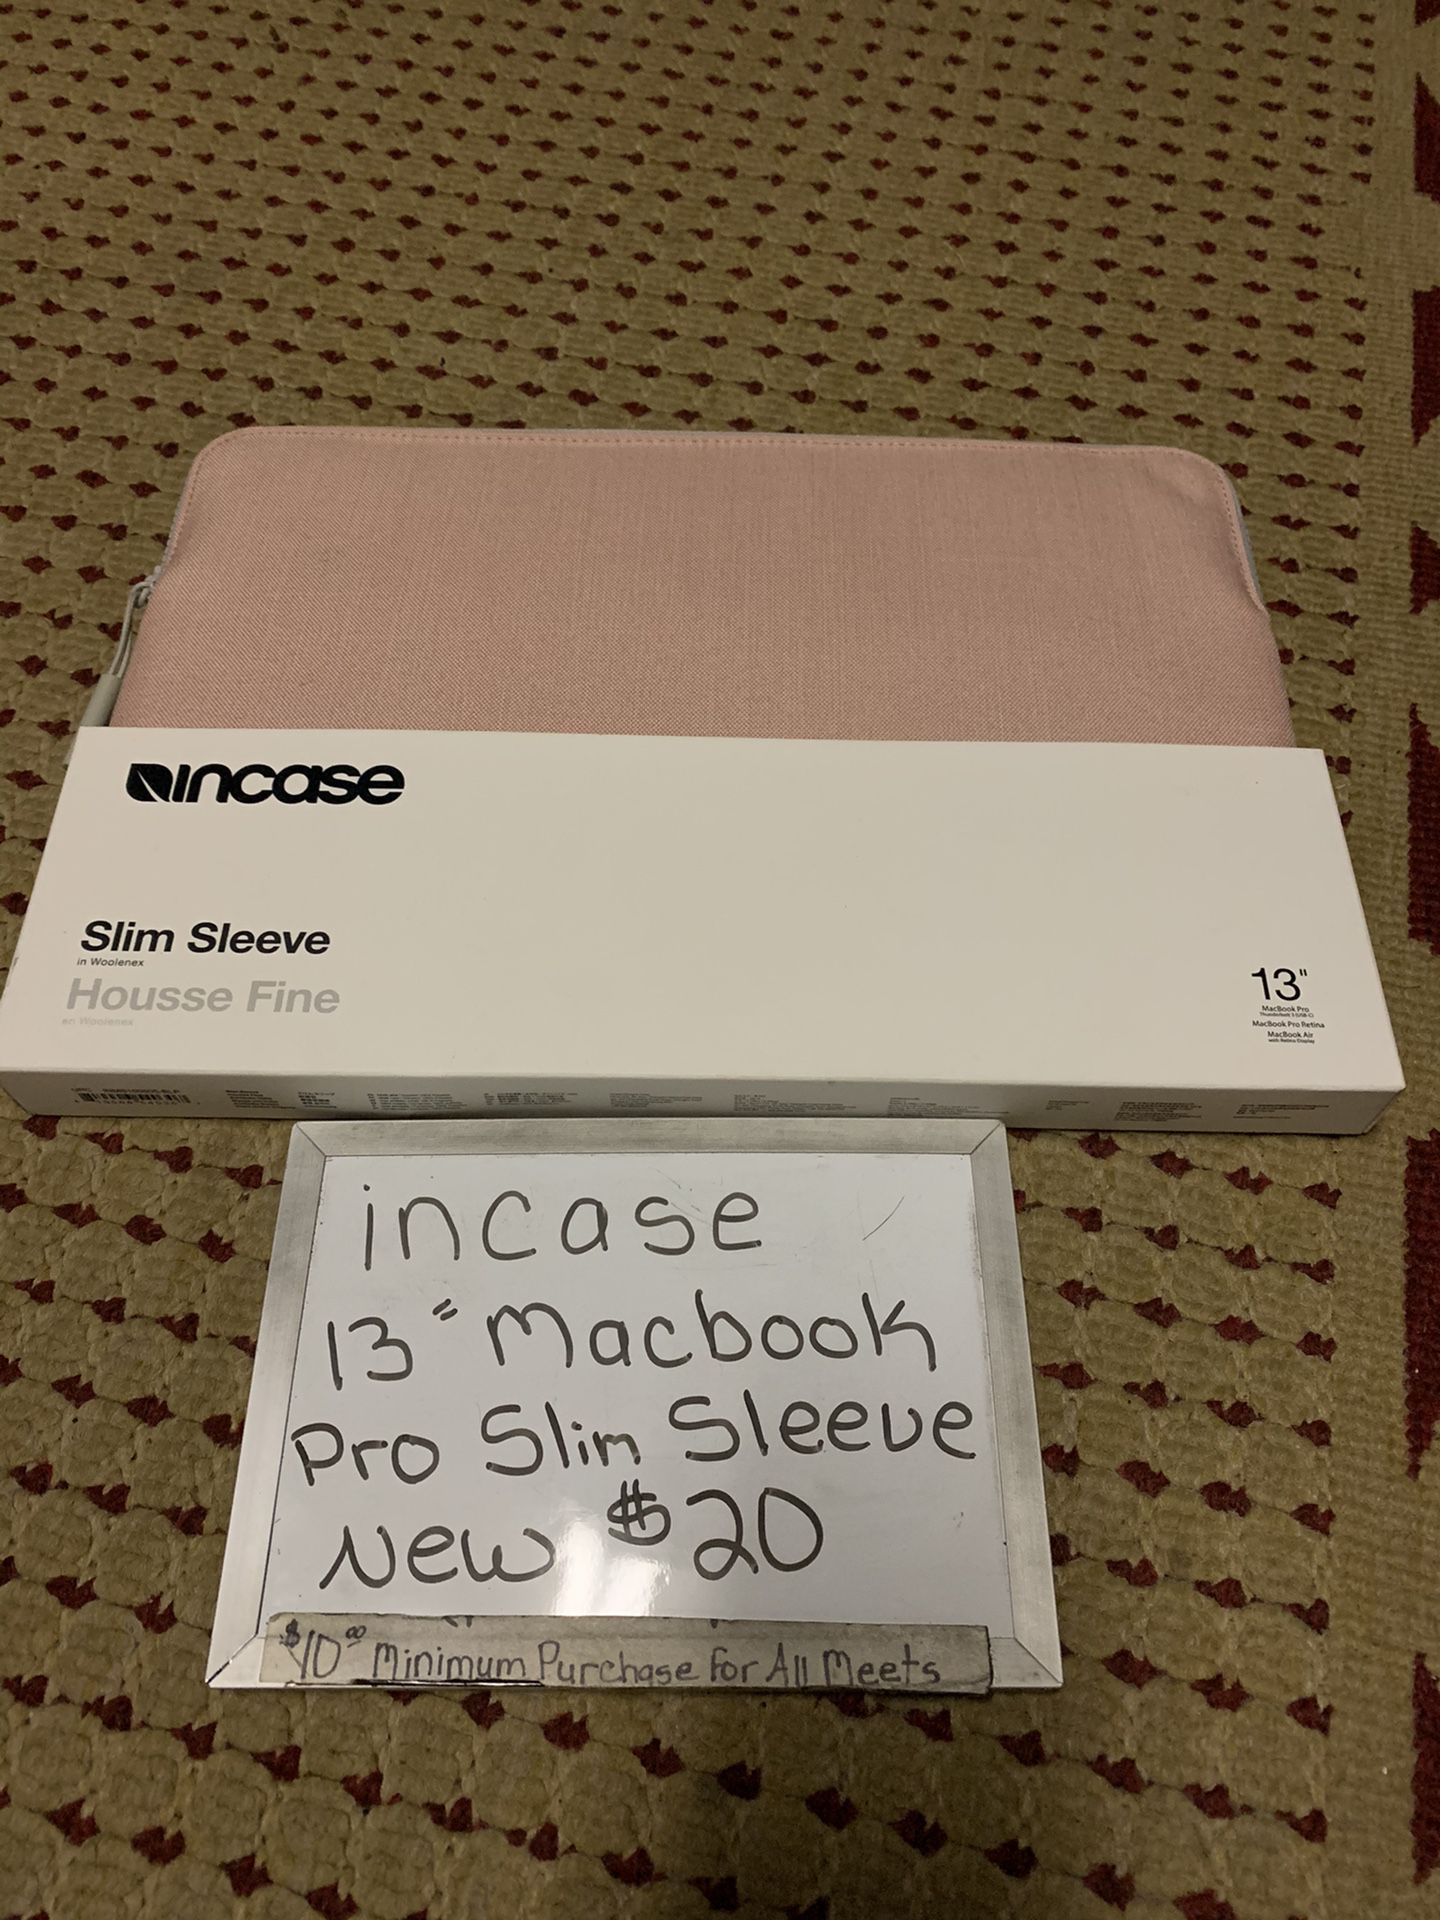 13” MacBook Pro Slim Sleeve